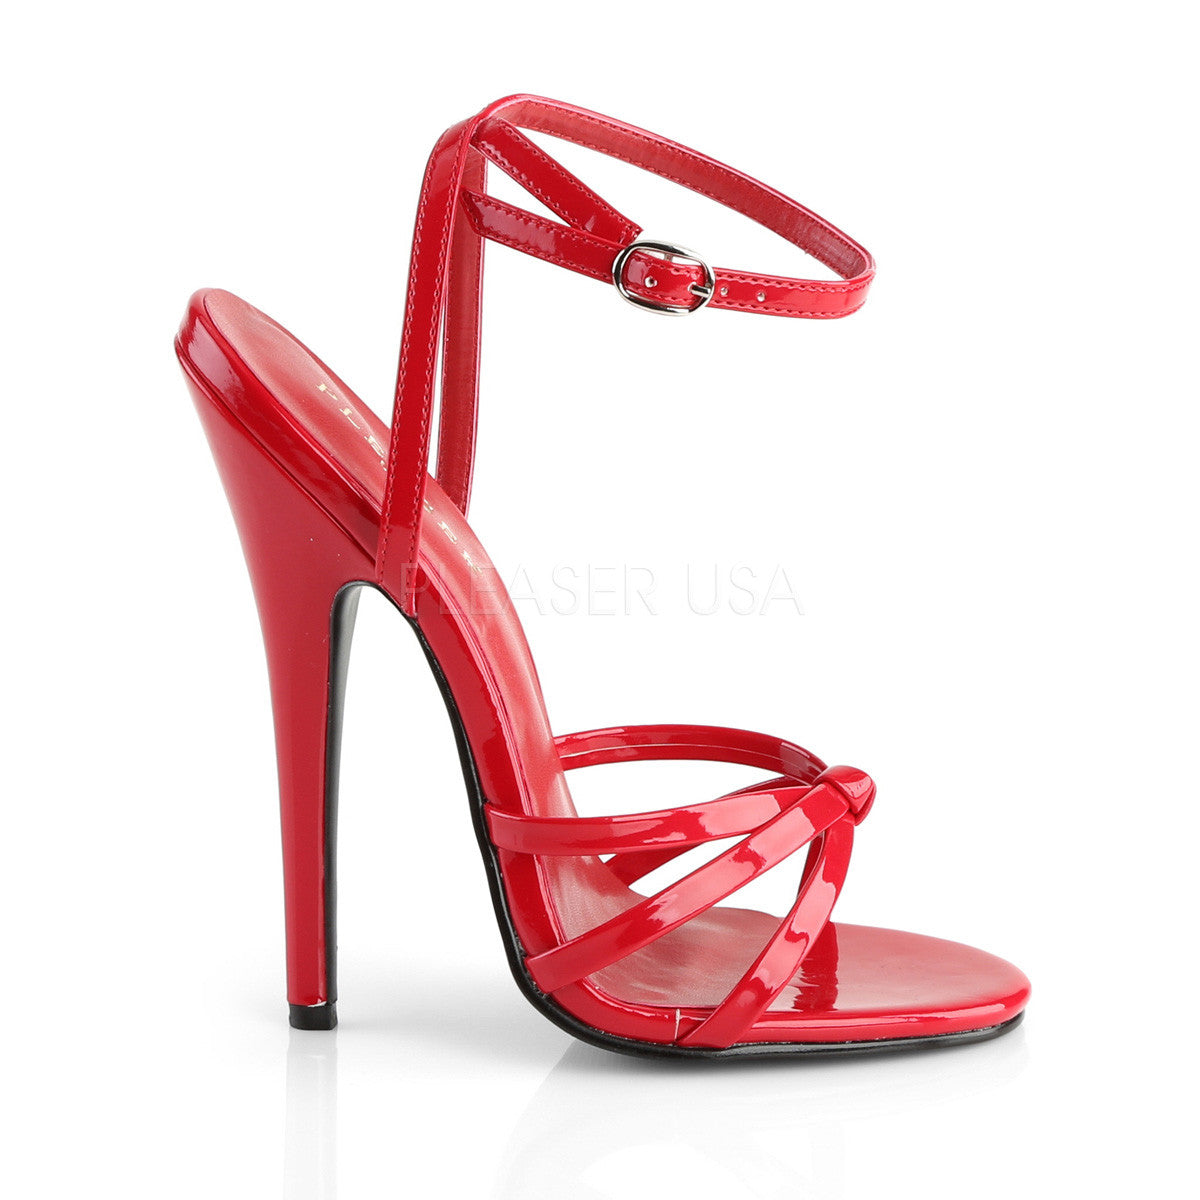 6" Heel DOMINA-108 Red